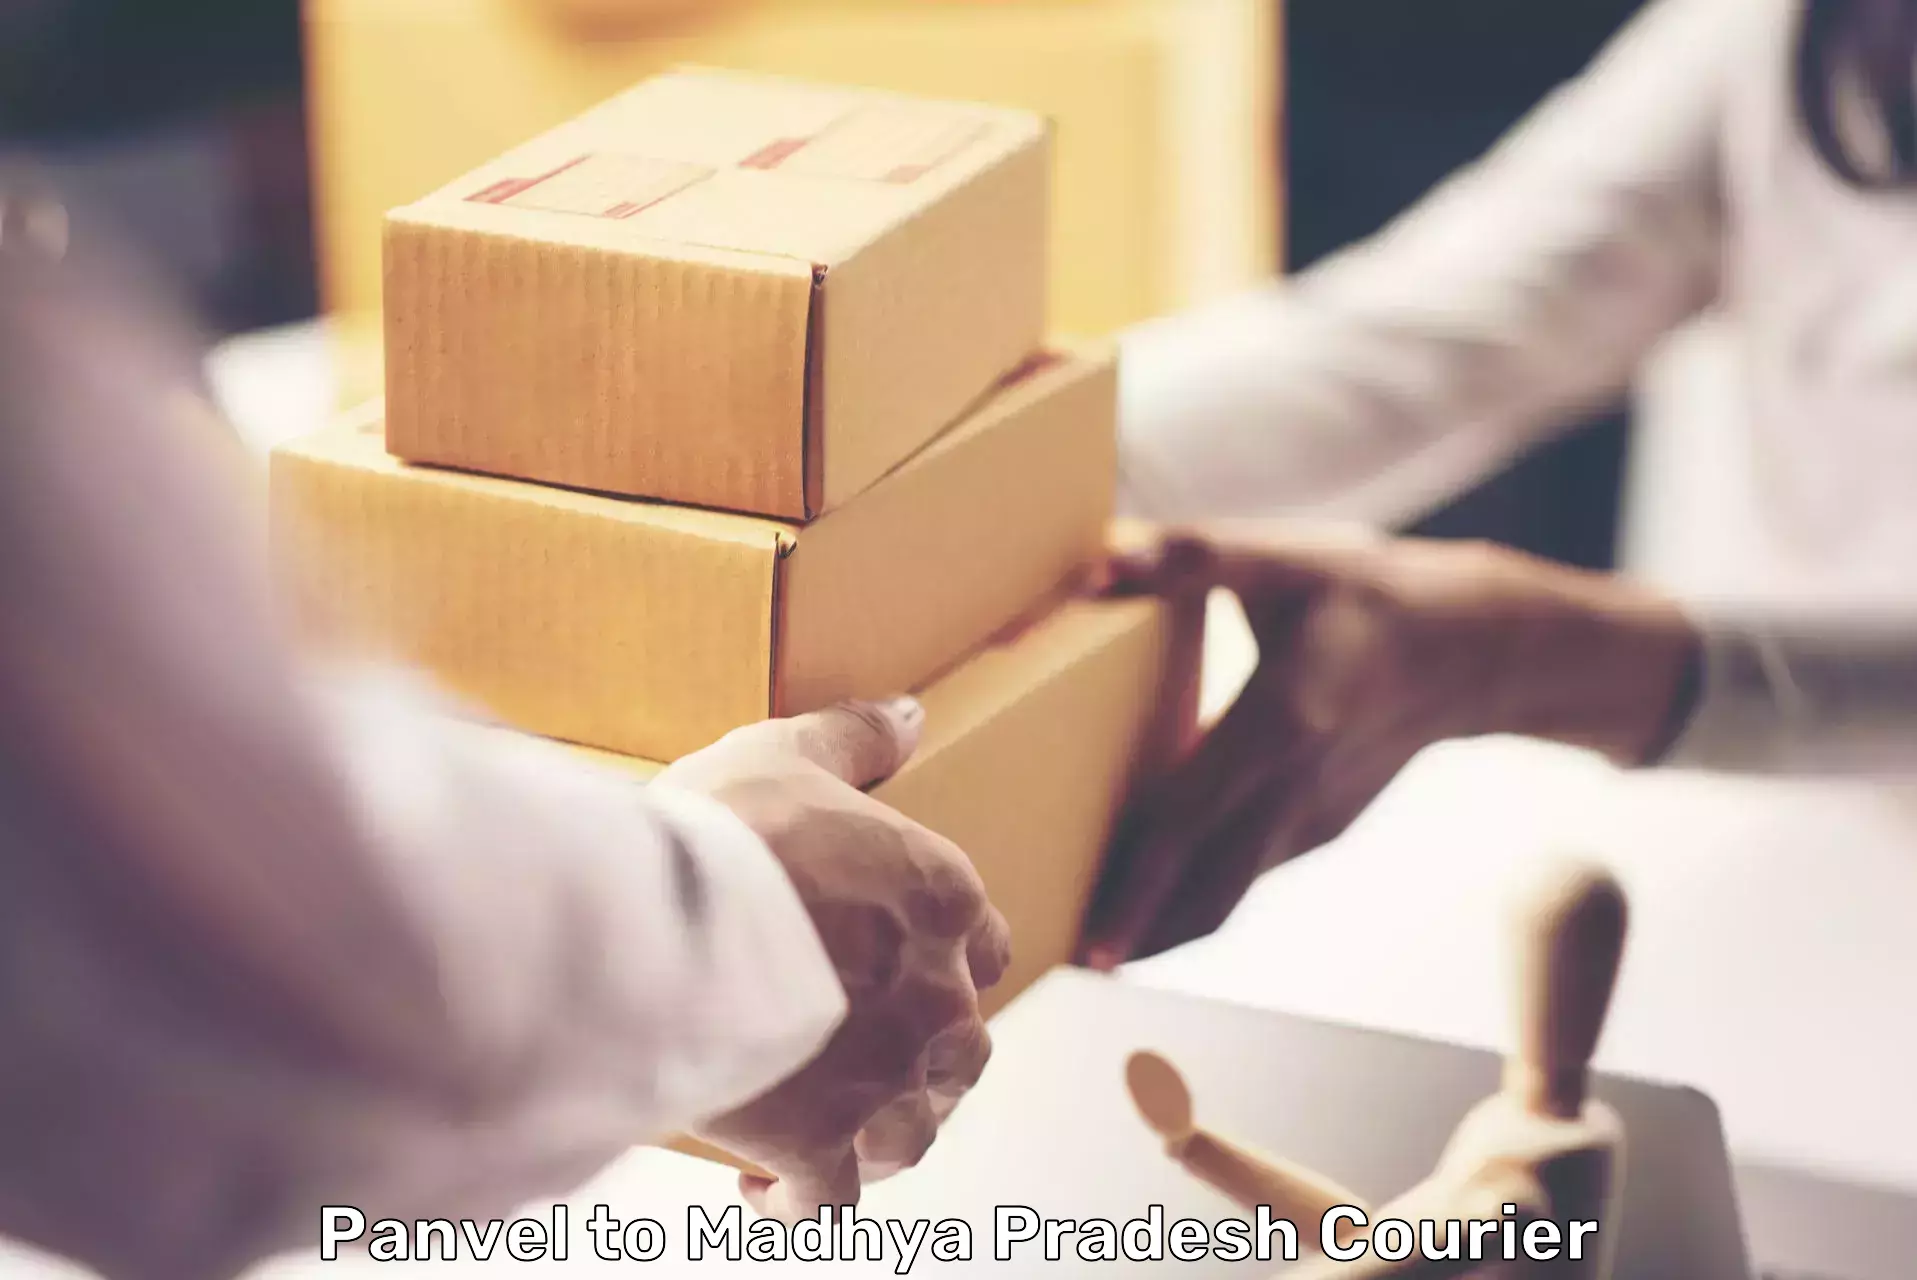 Express logistics providers Panvel to Katni